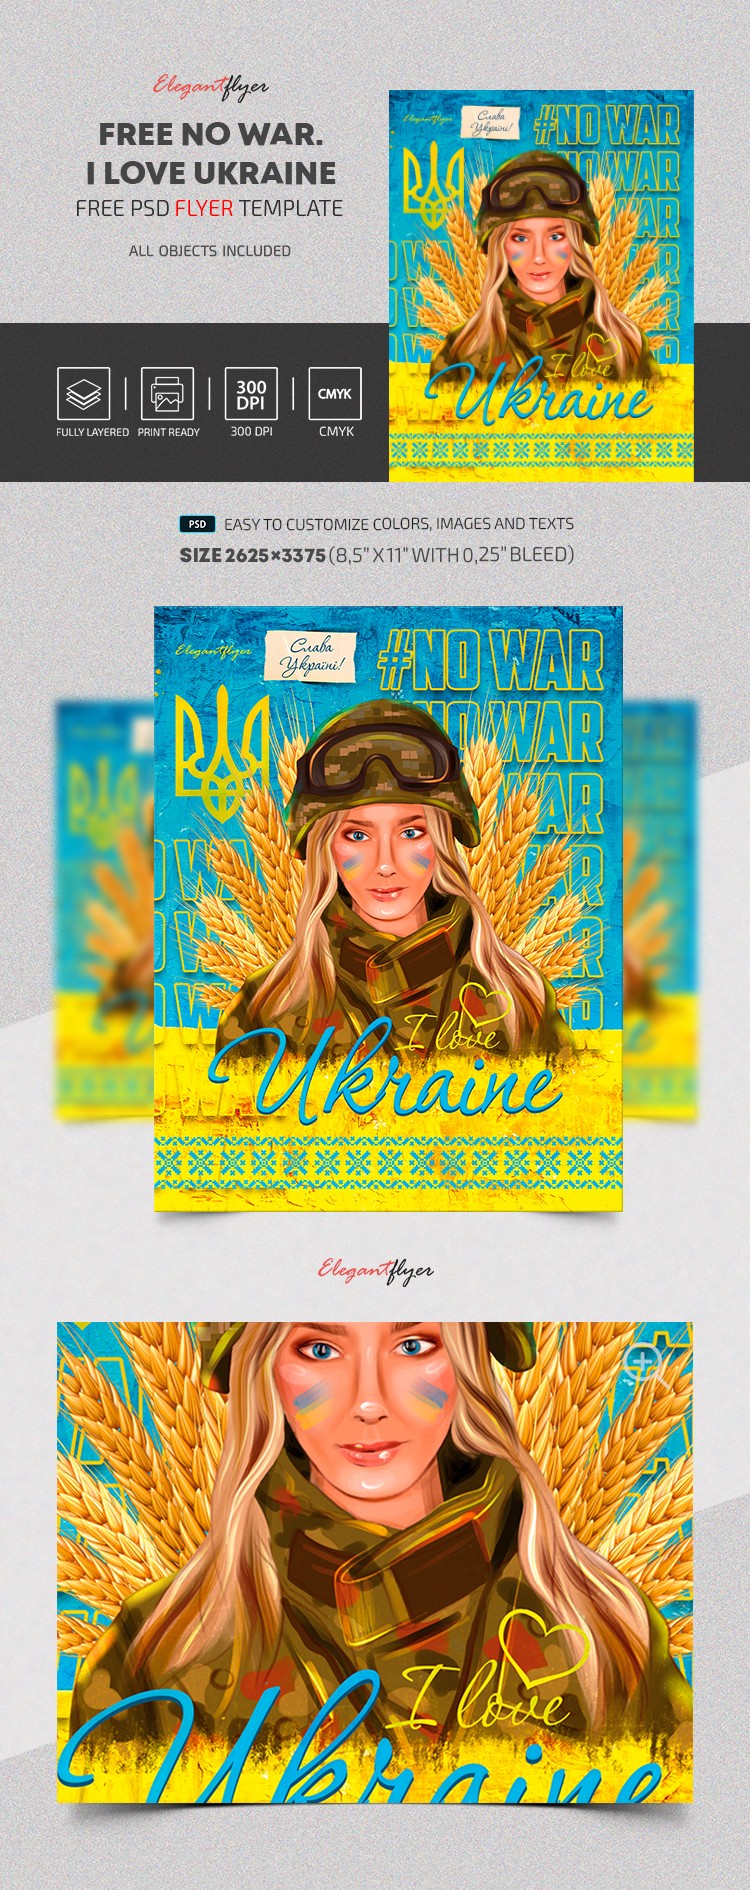 Arrêtez la guerre en Ukraine. Flyer. by ElegantFlyer